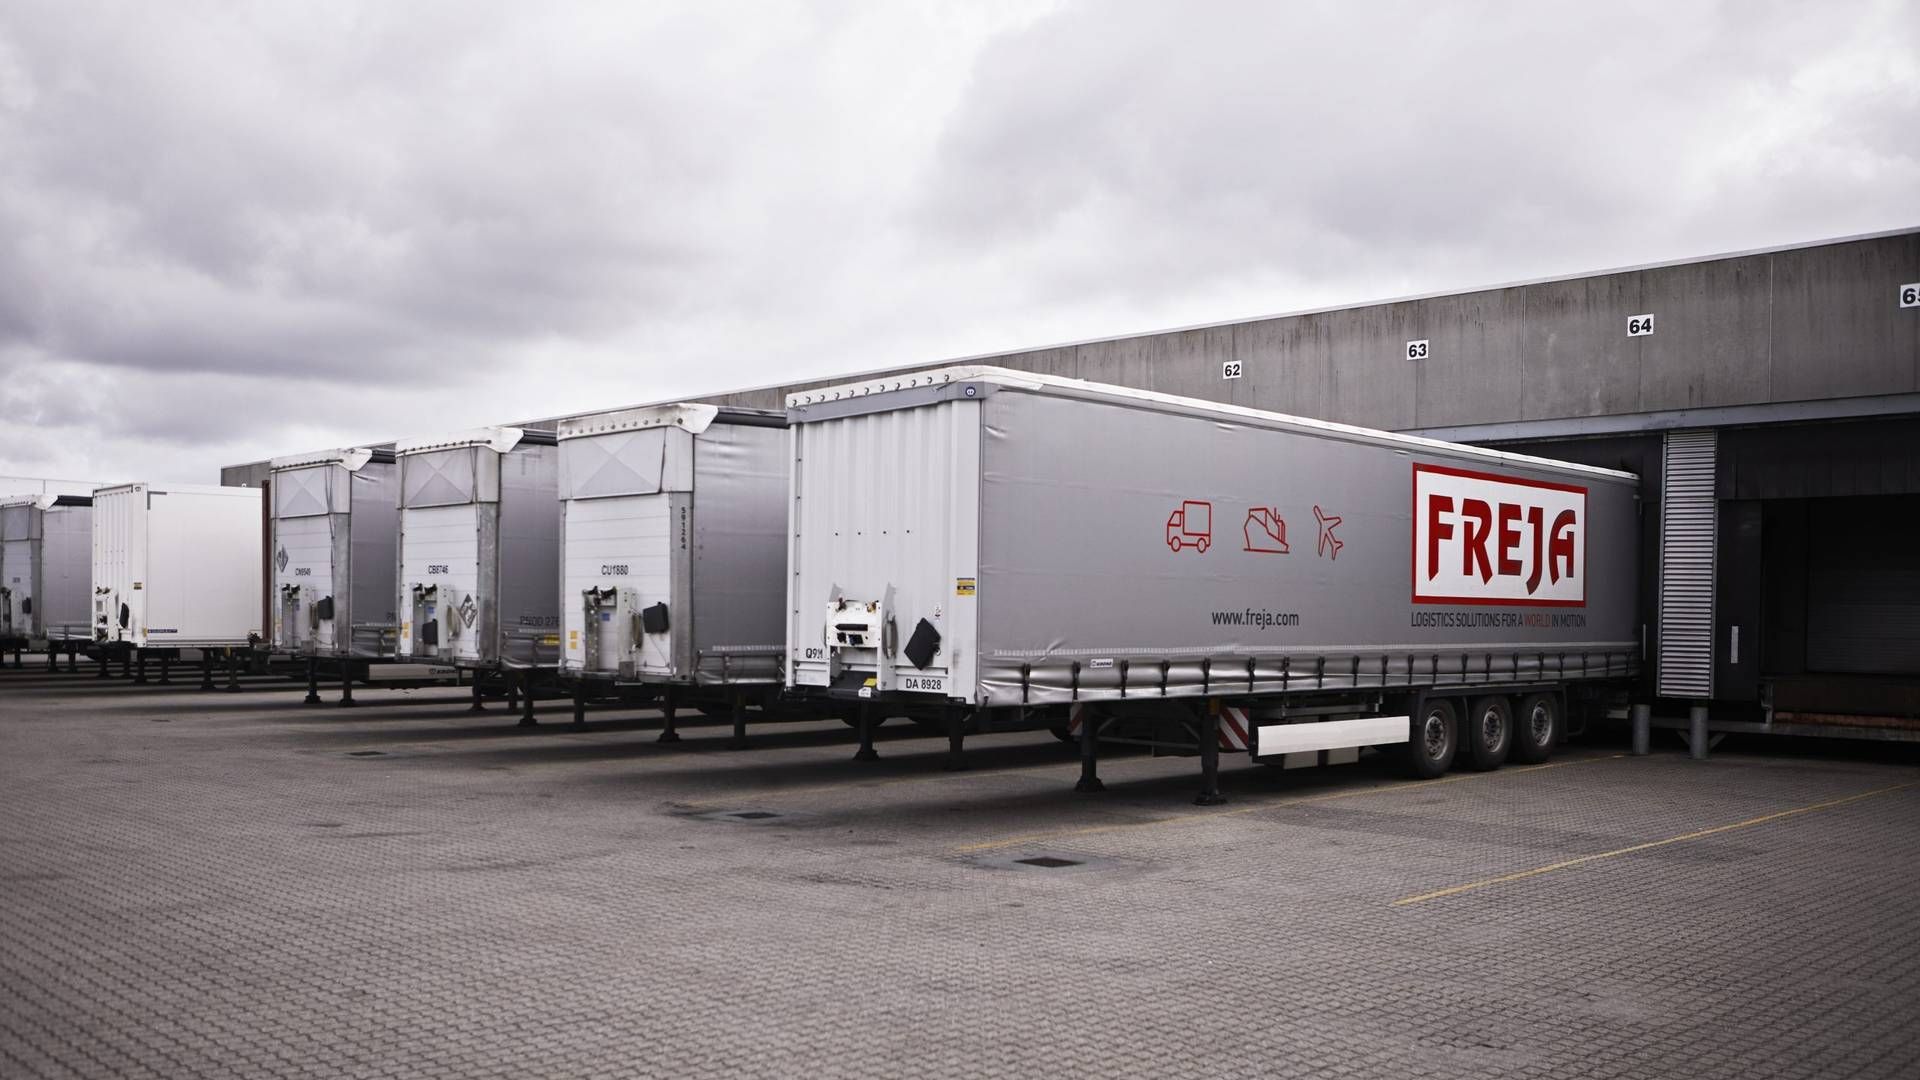 Transportvirksomheden Freja er klar til at konkurrere på fragt af dagligvarer. | Foto: Freja Transport og Logistics/pr